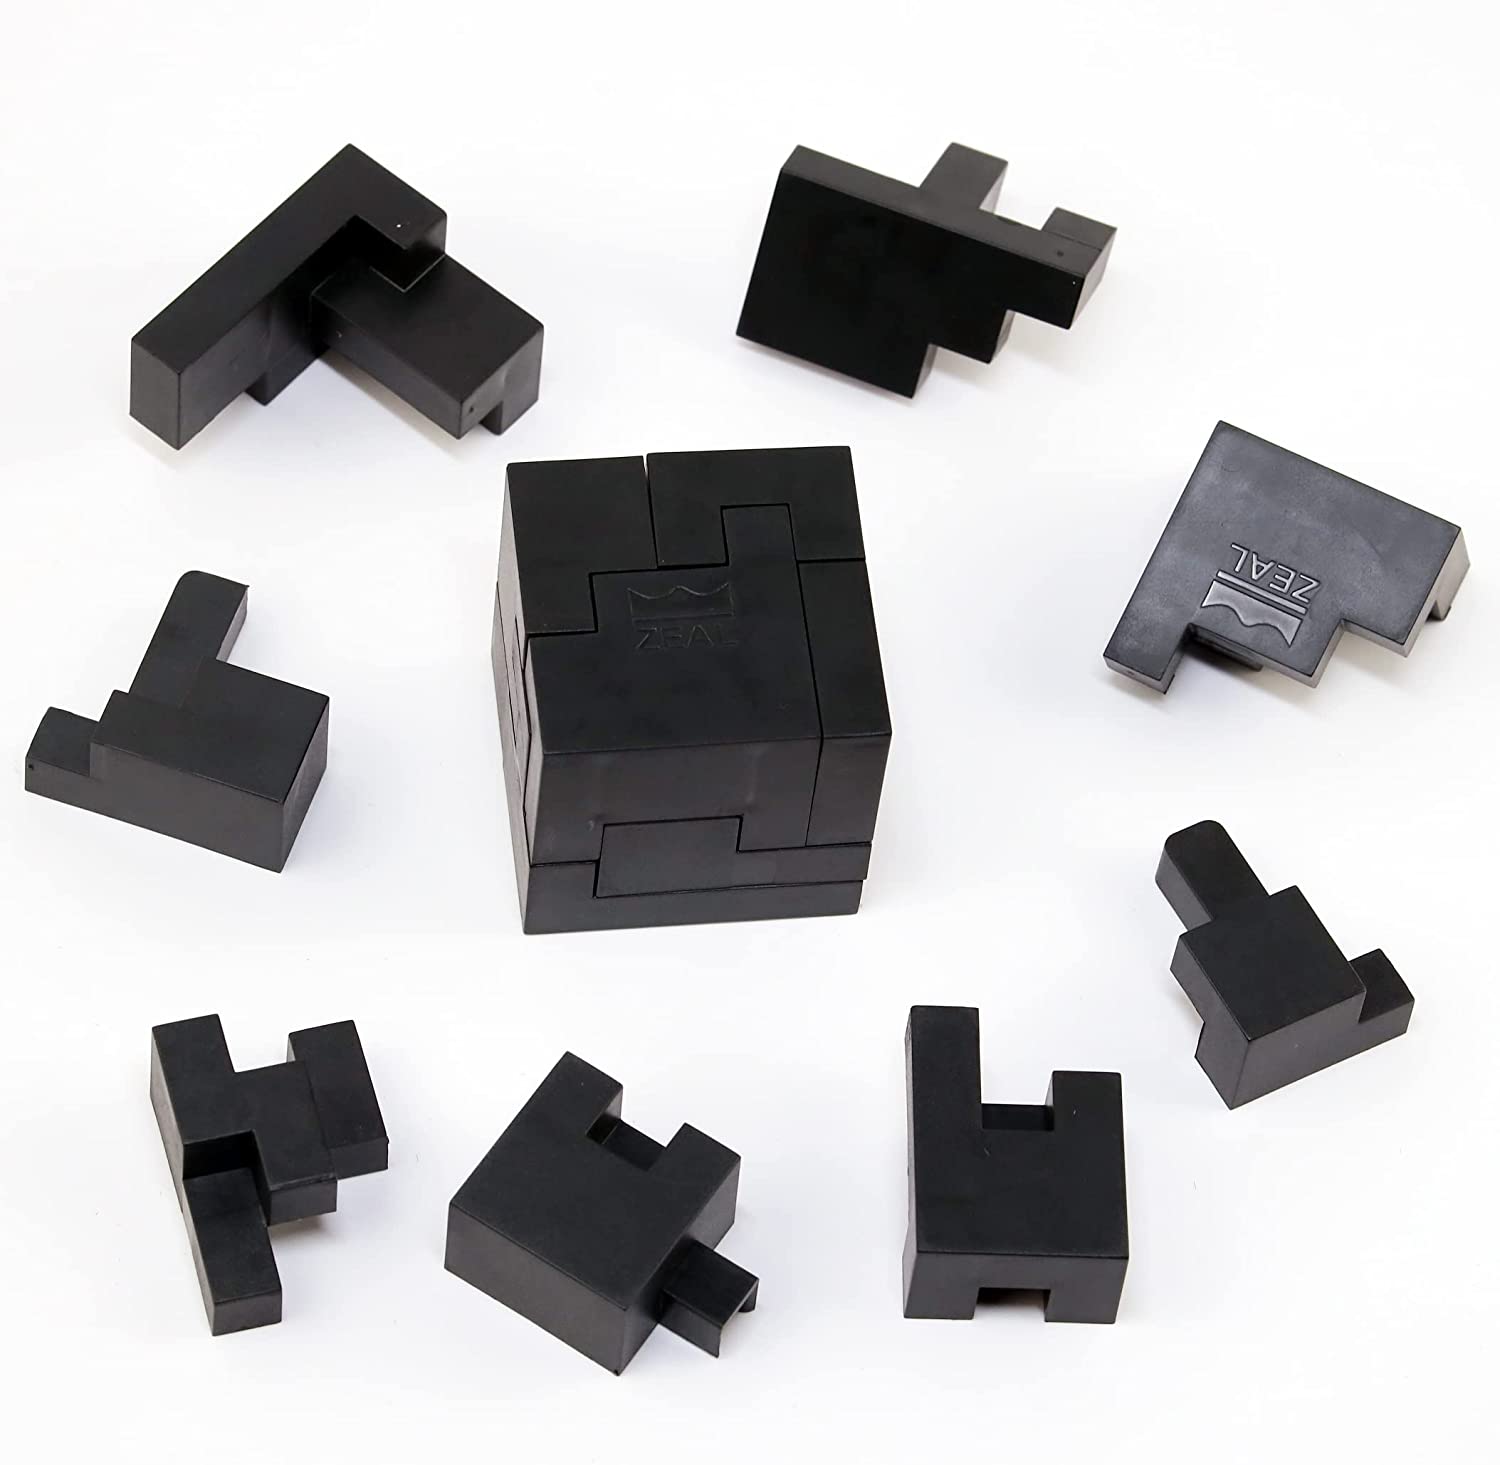 Keraiz 3d Puzzle Cube Brain Teaser MindBending Button Twist Slide Toy Logic Game 